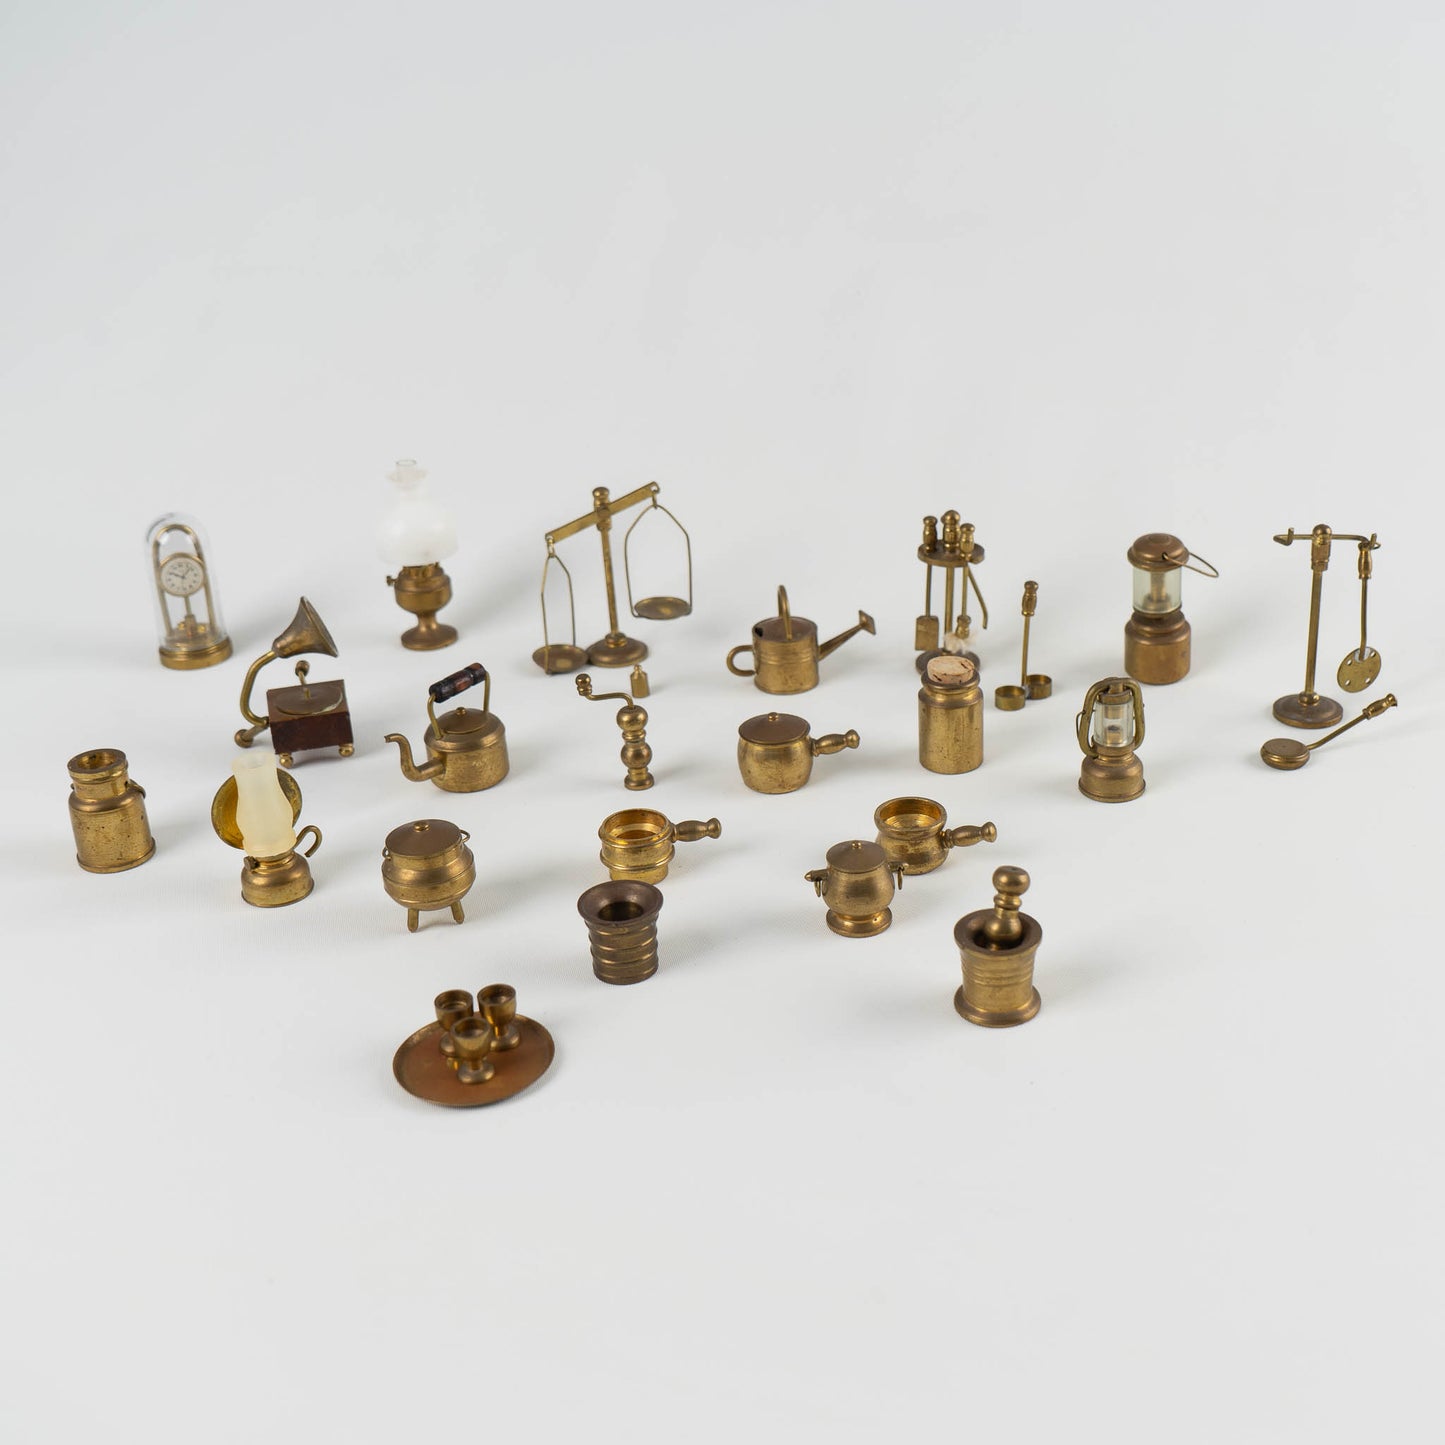 Walbest Mini Brass Figurine Vintage Ornamental Casting Vivid